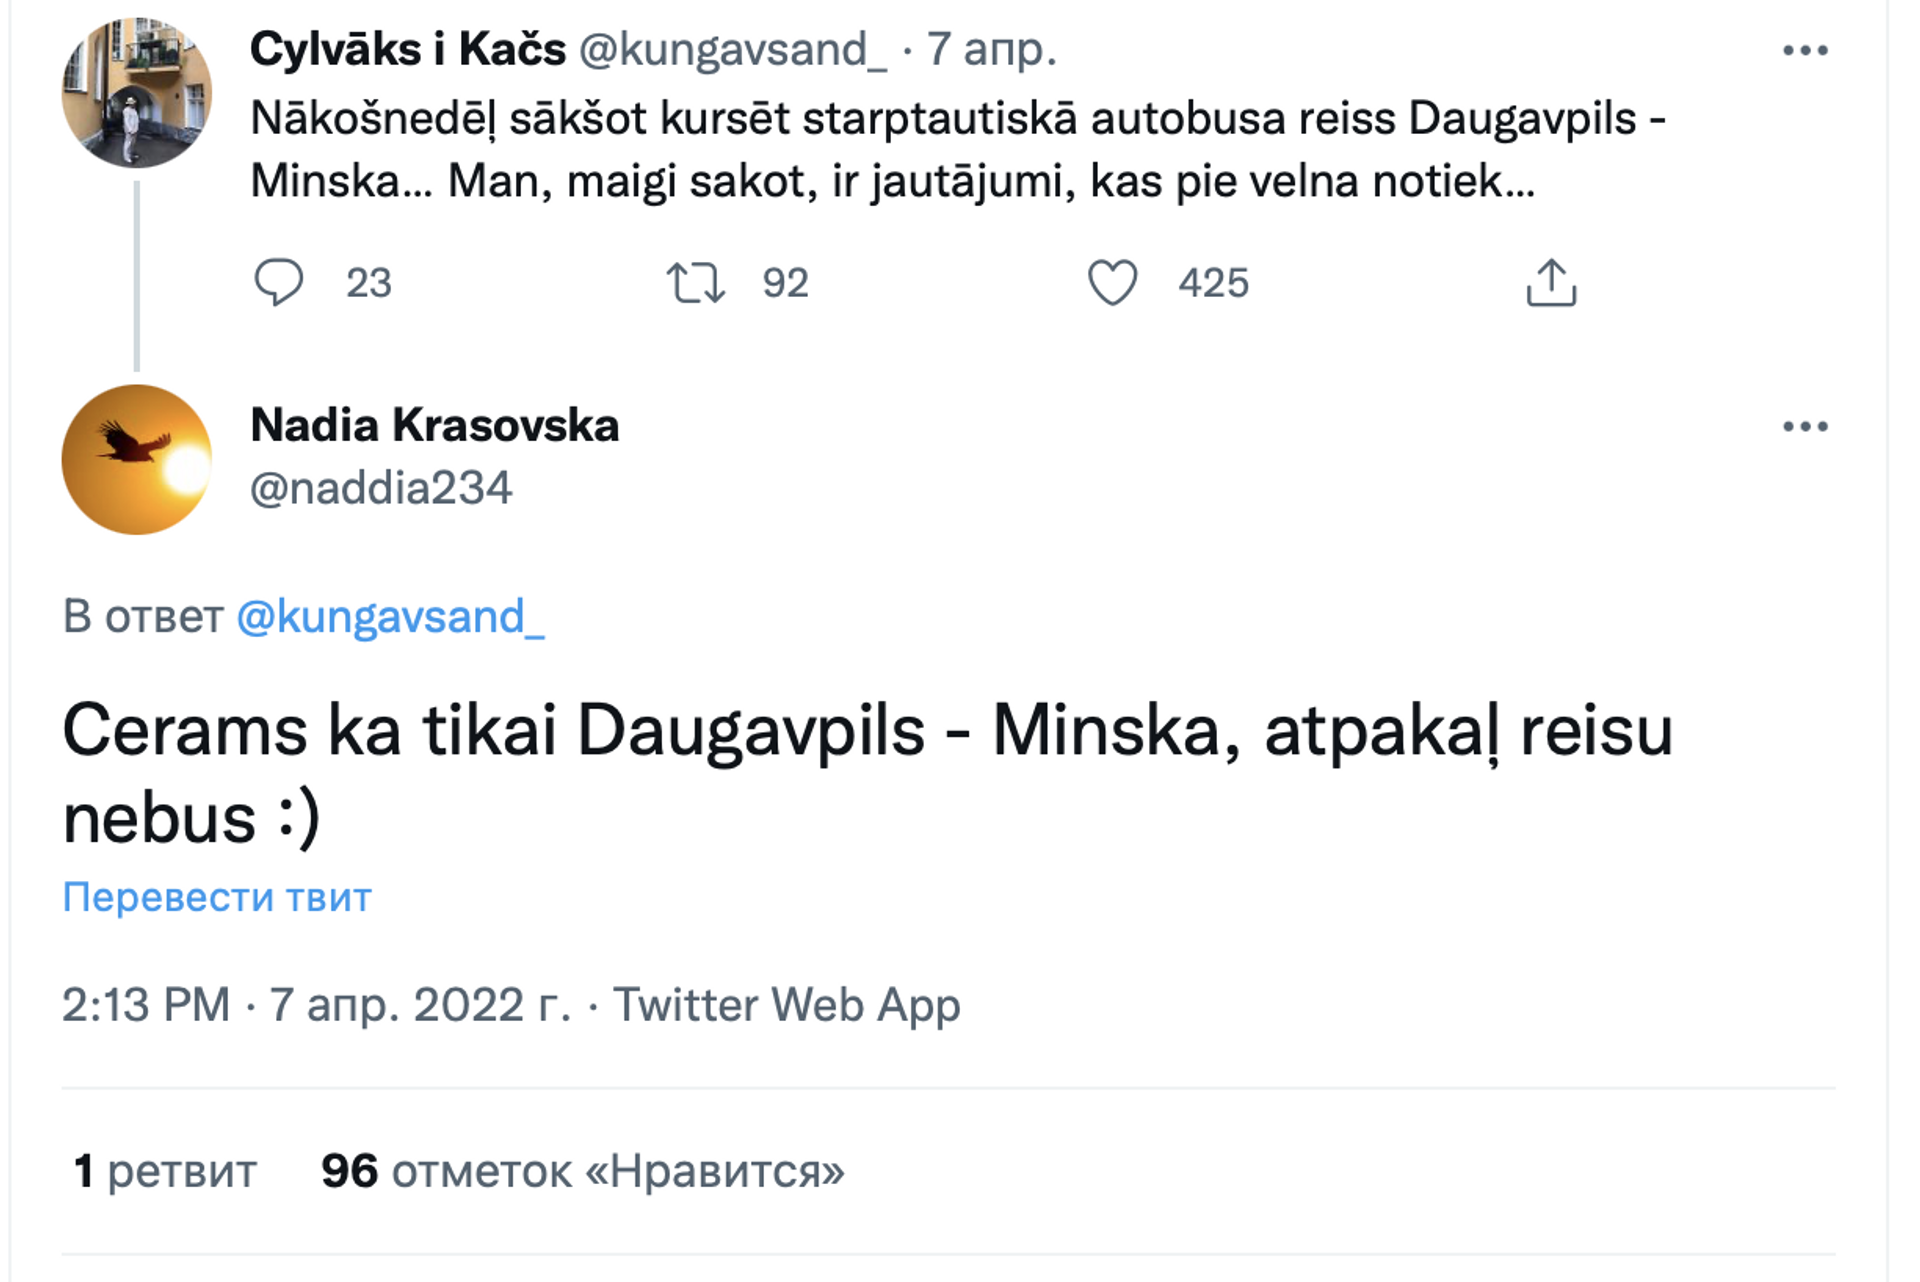 Скриншот поста в Twitter  - Sputnik Латвия, 1920, 08.04.2022